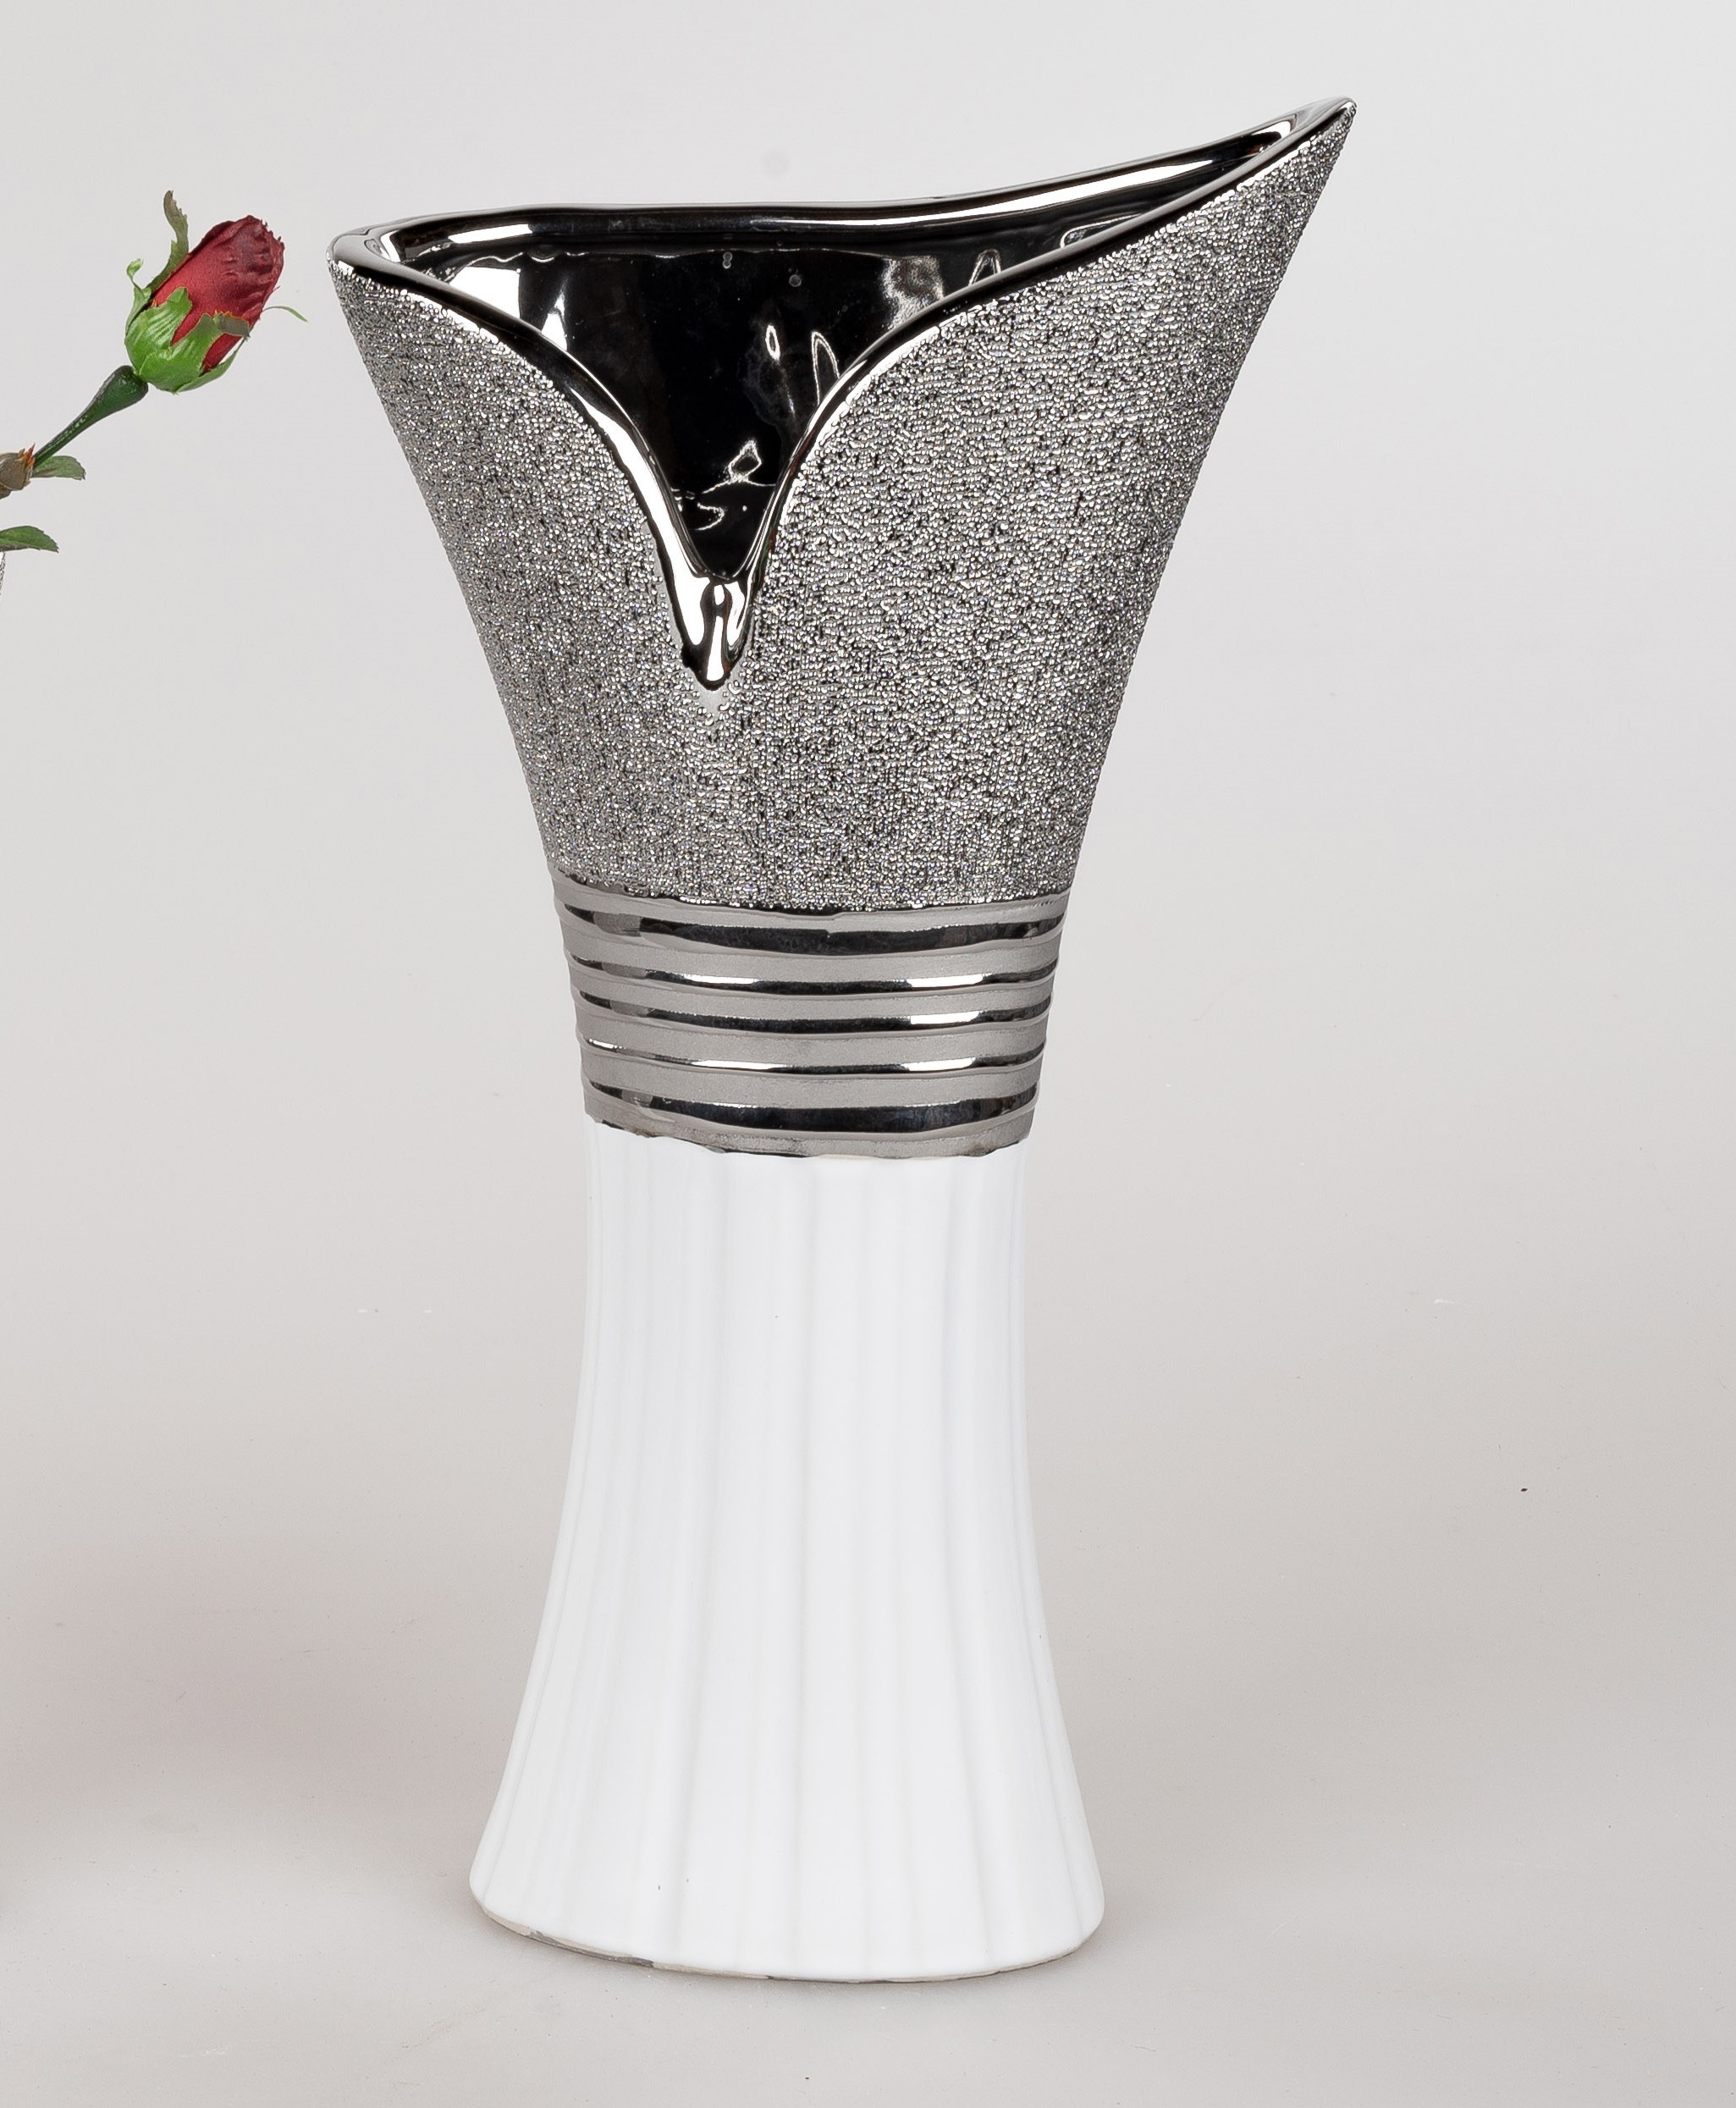 24 cm hoch Keramik weiss silber bauchig Blumenvase 722508 ♥ Formano Vase ca 